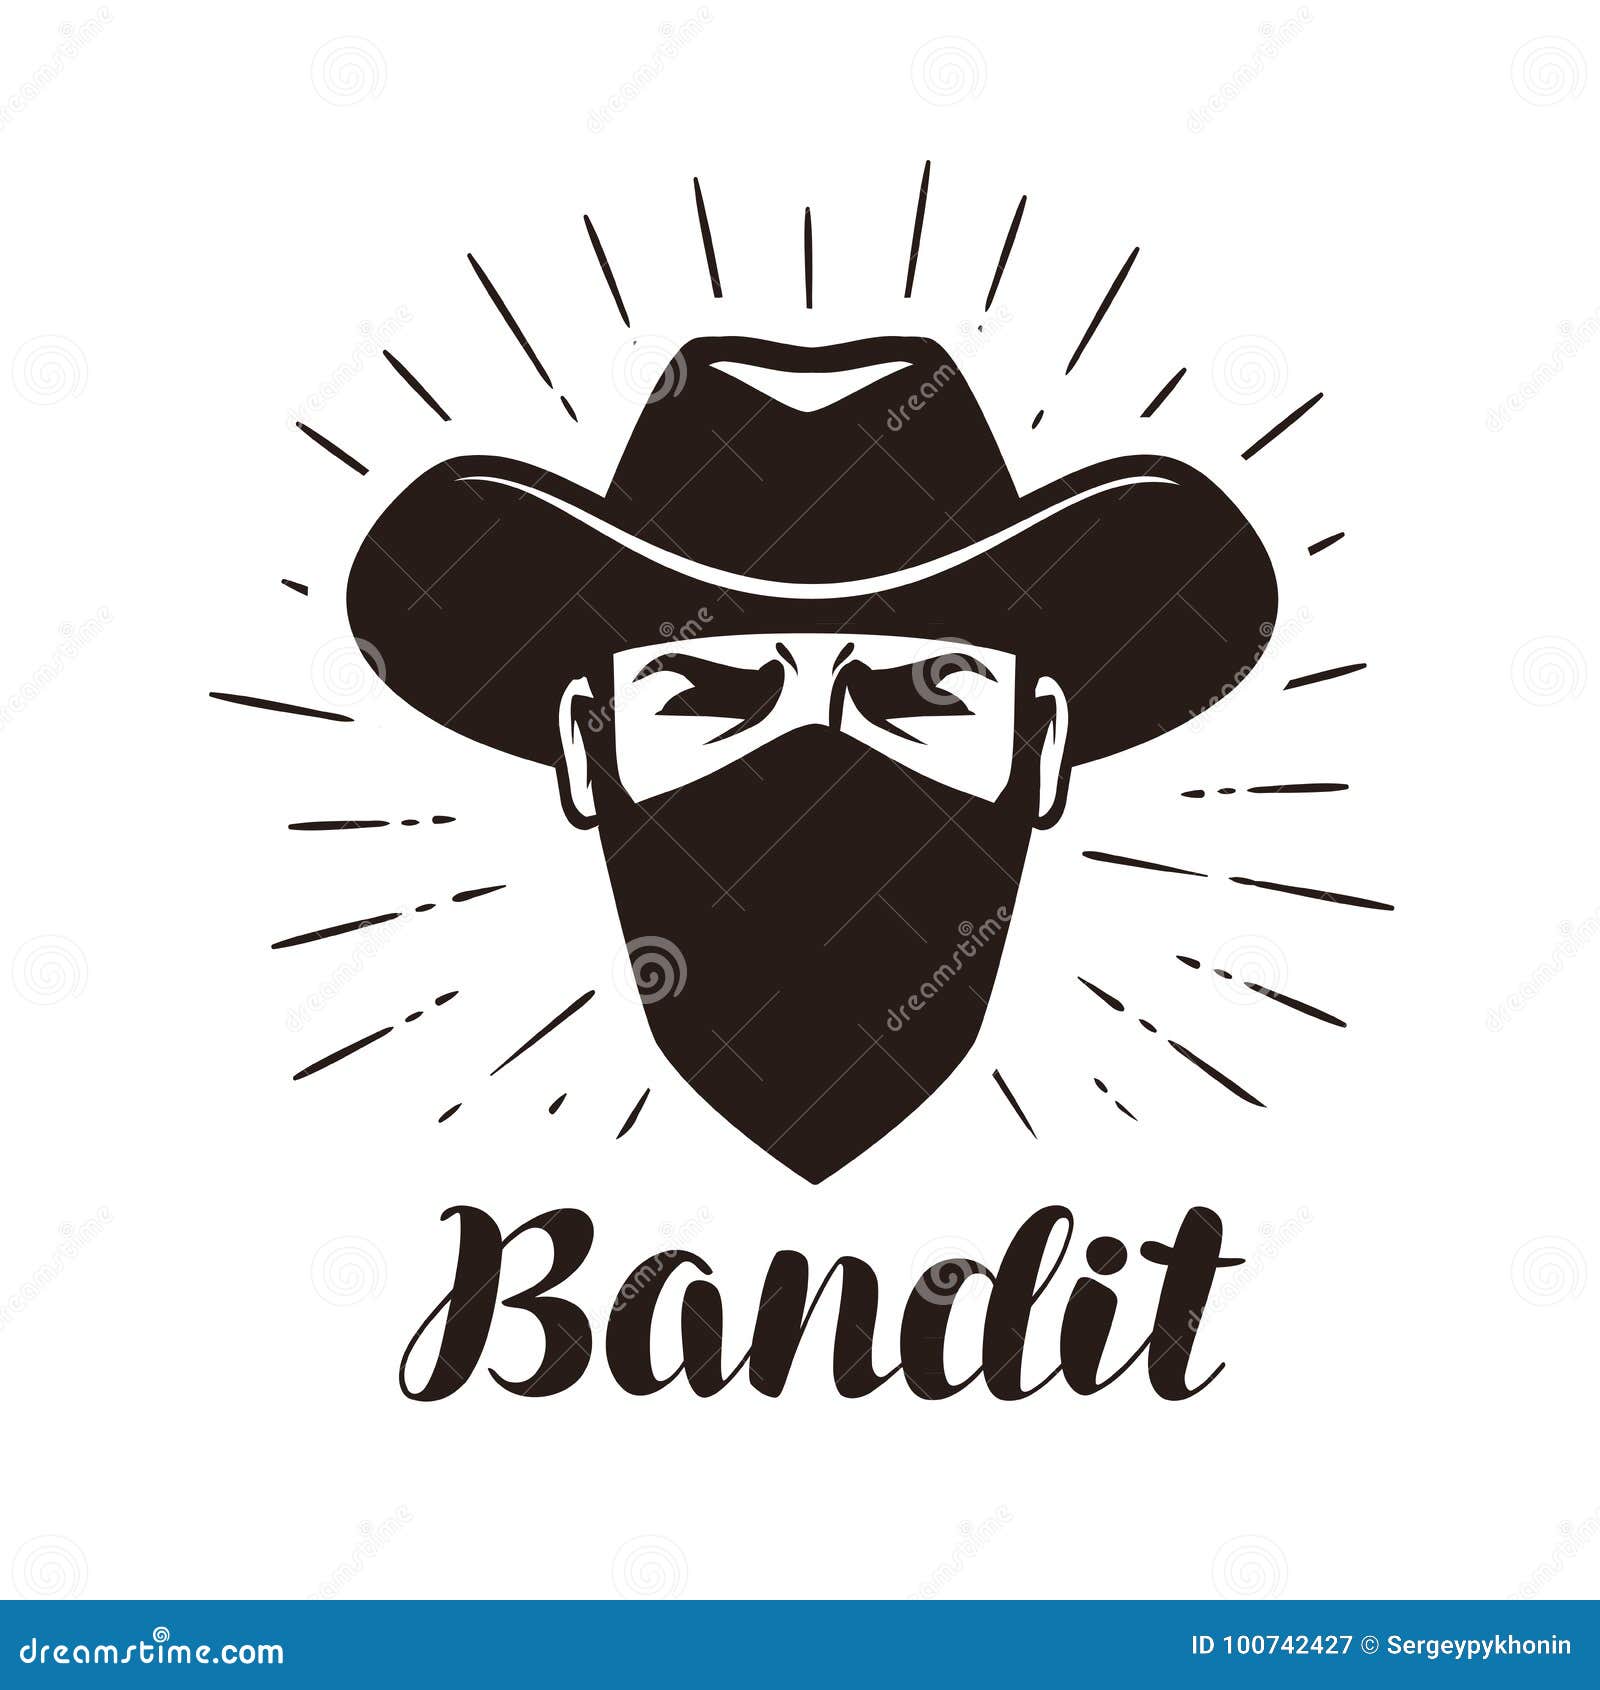 bandido-logotipo-del-g%C3%A1ngster-o-etiqueta-enojado-retrato-vaquero-en-m%C3%A1scara-100742427.jpg